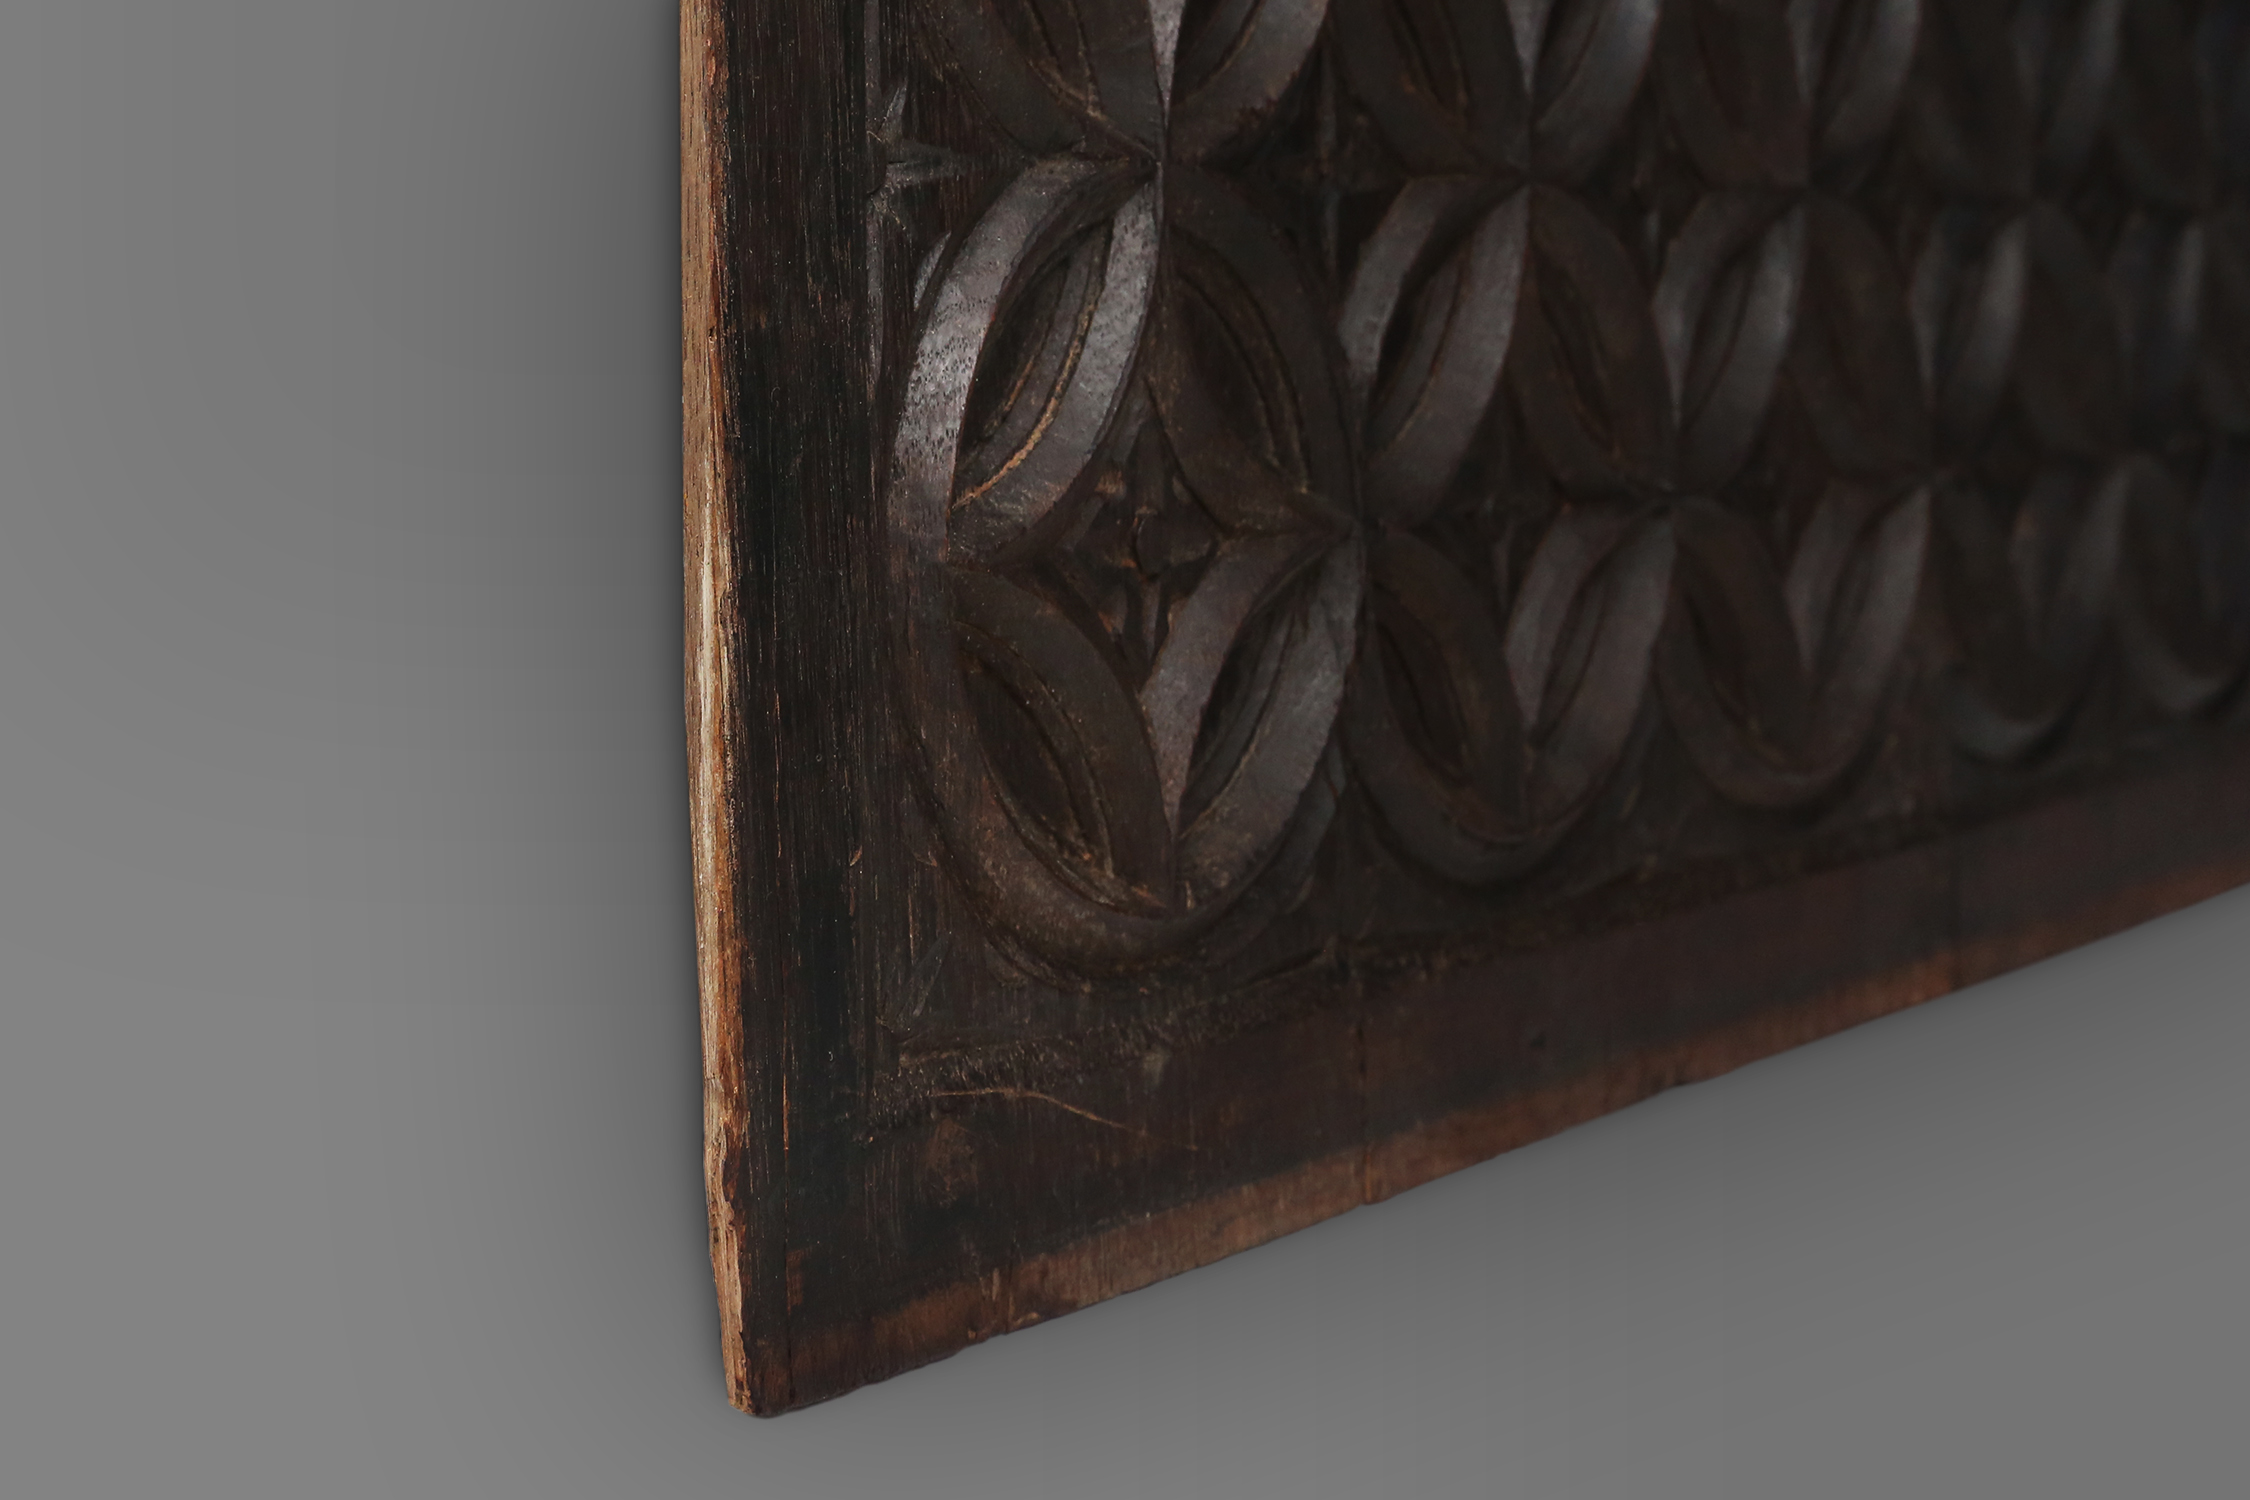 Gothic Wood Panel, France, 1600sthumbnail